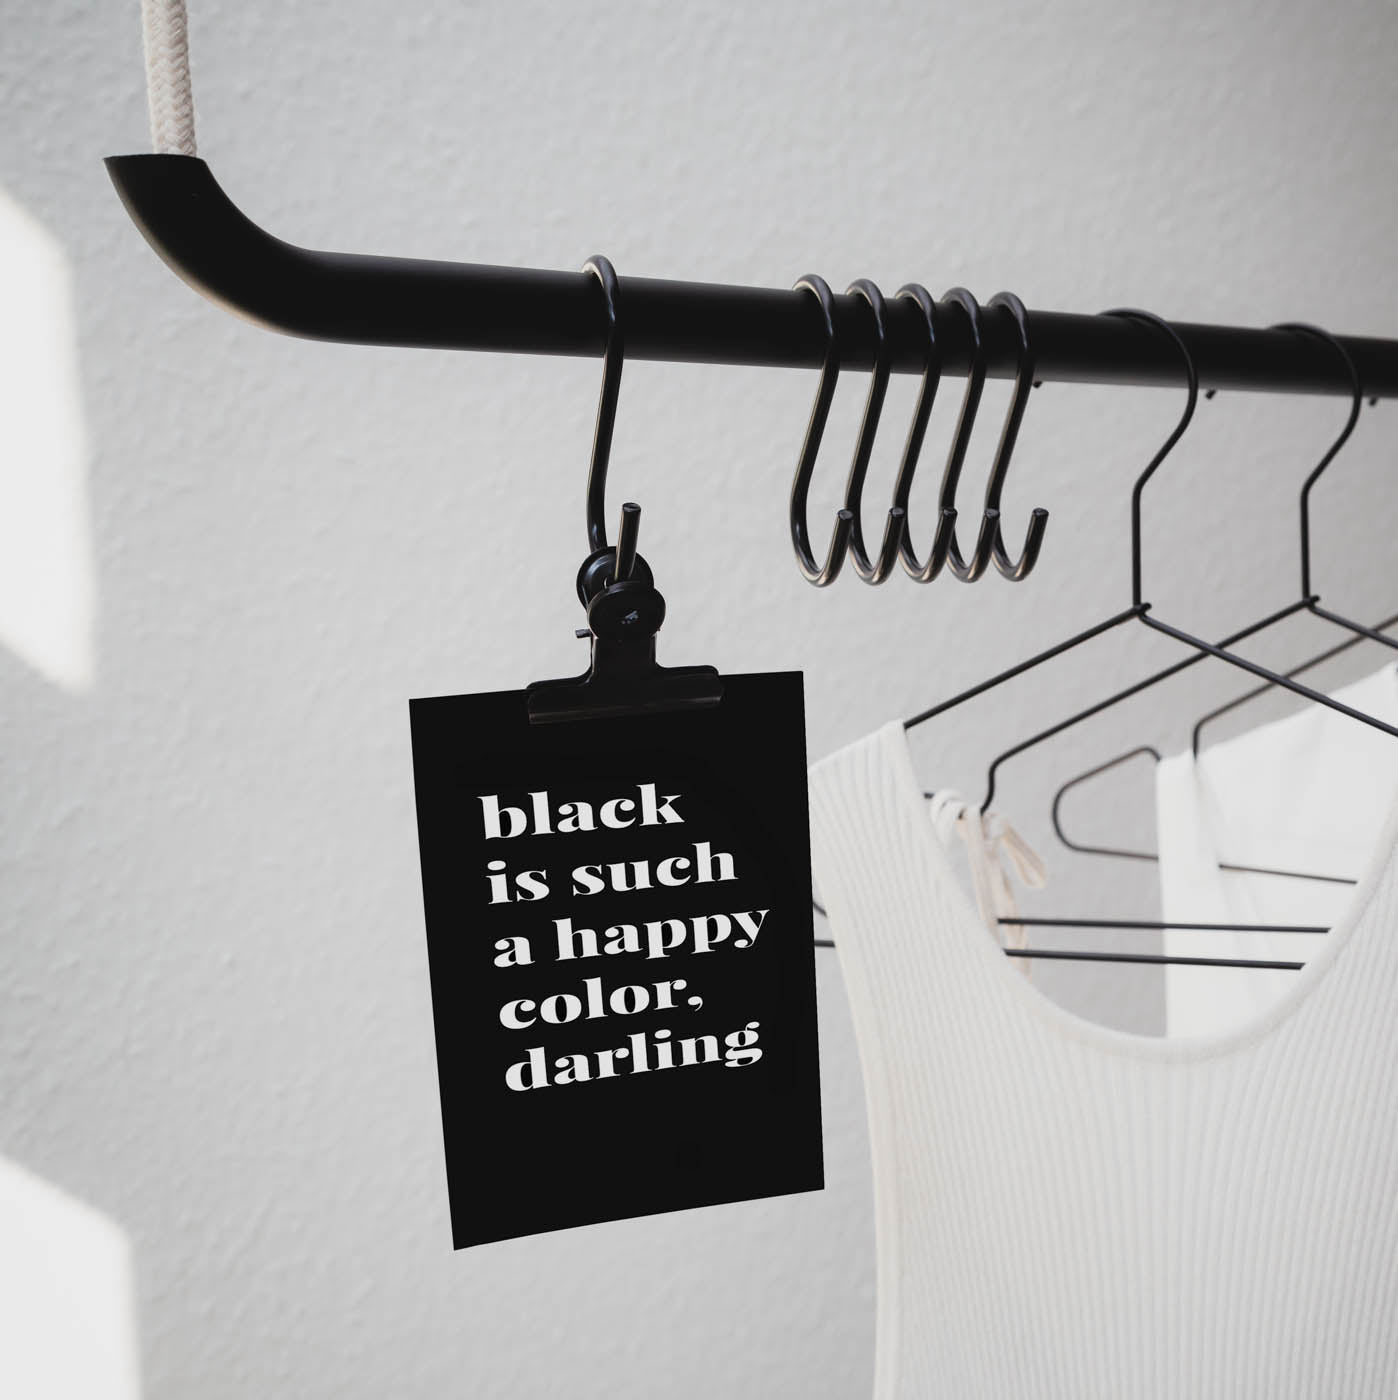 Kleiderstange an der eine Postkarte hängt auf der steht: "black is such a happy color, darling"